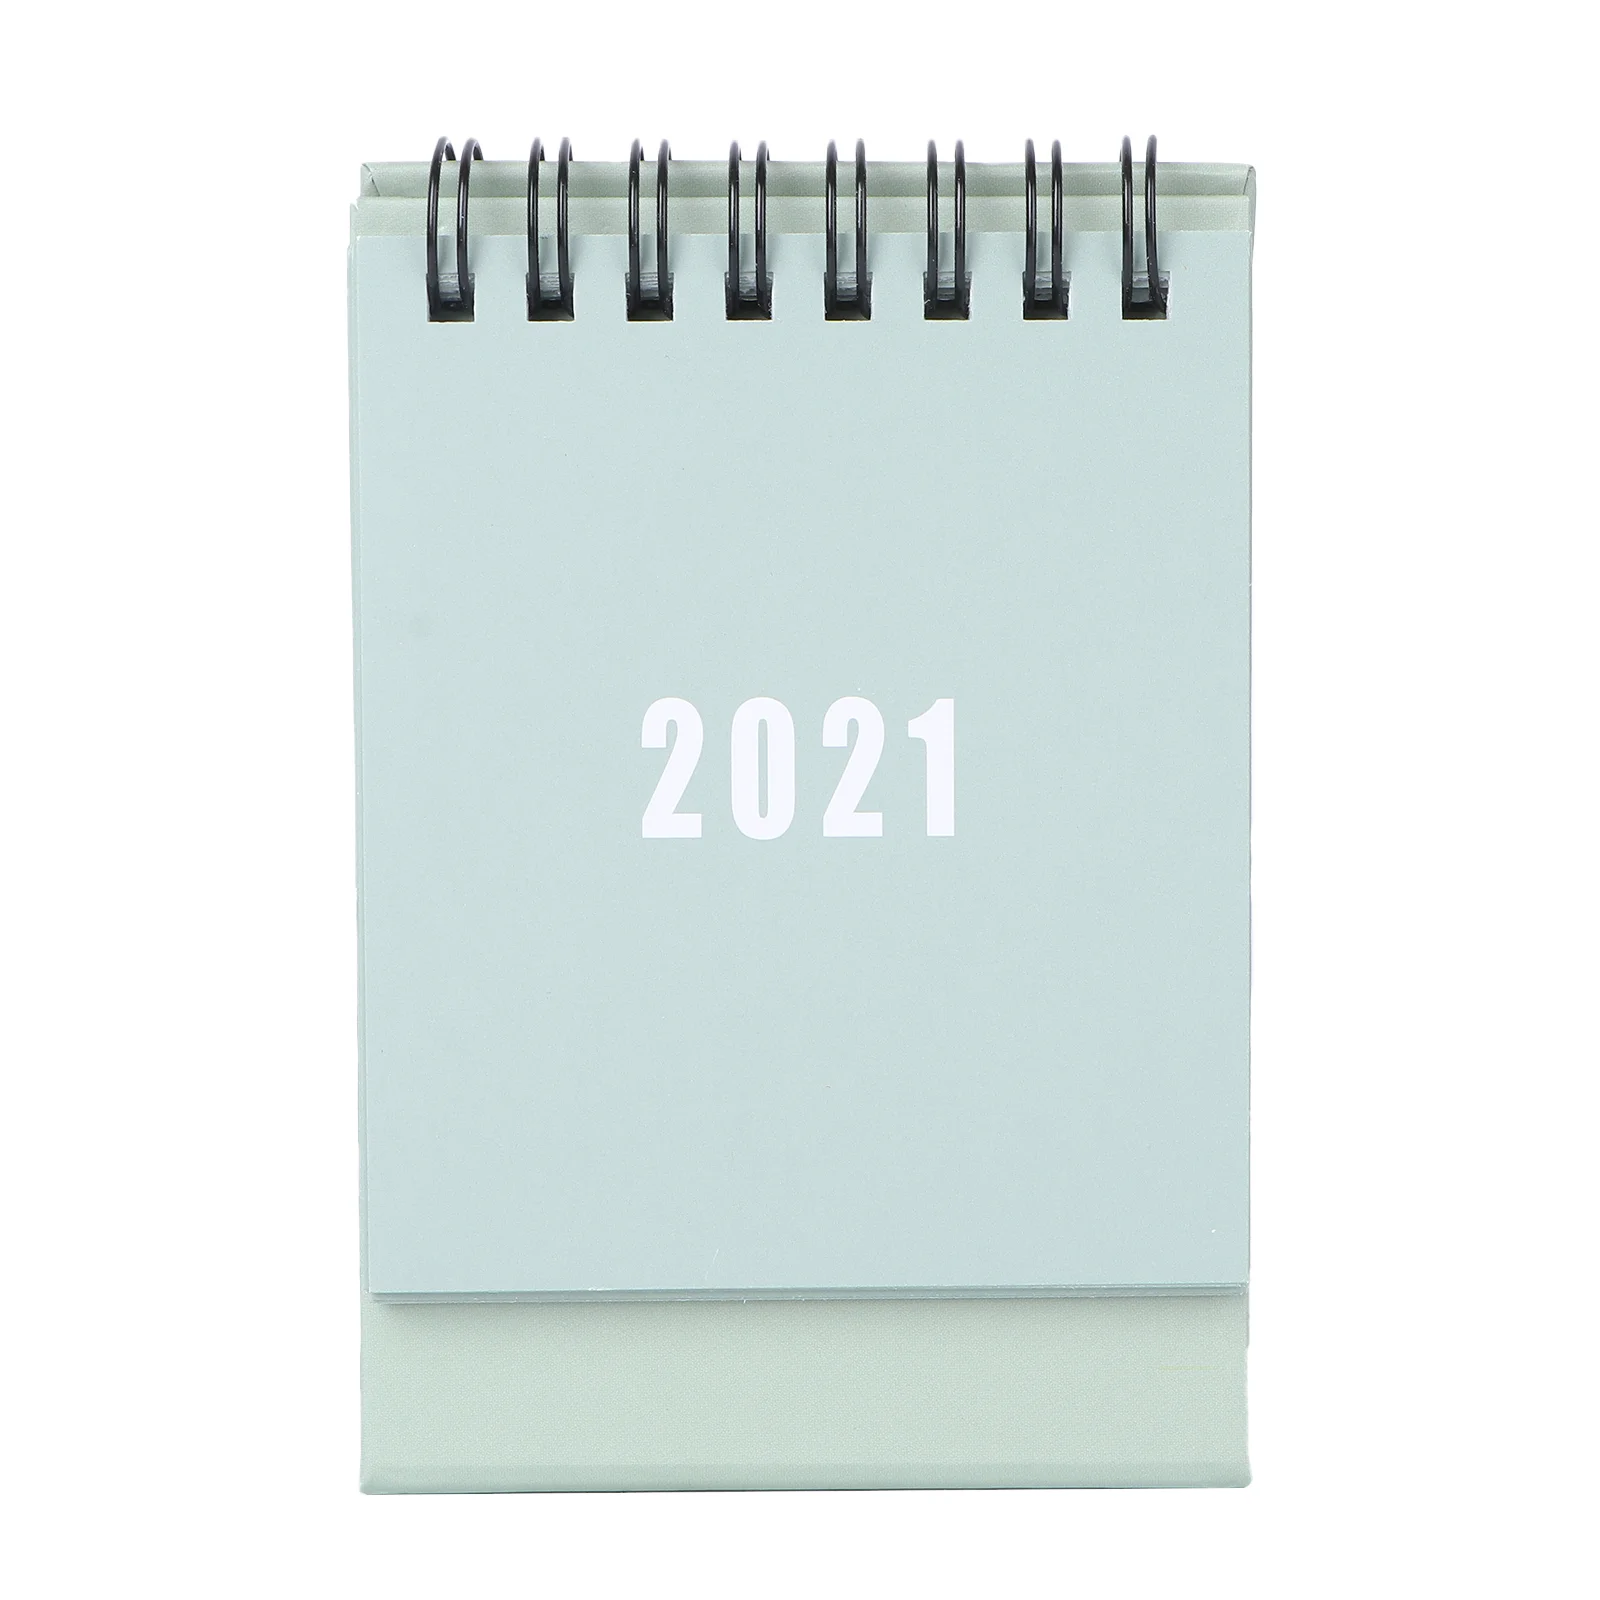 2021 креативный календарь для записей, ежемесячный календарь для работы, календарь для рабочего стола 2020, календарь для настольного ПК, мини е...